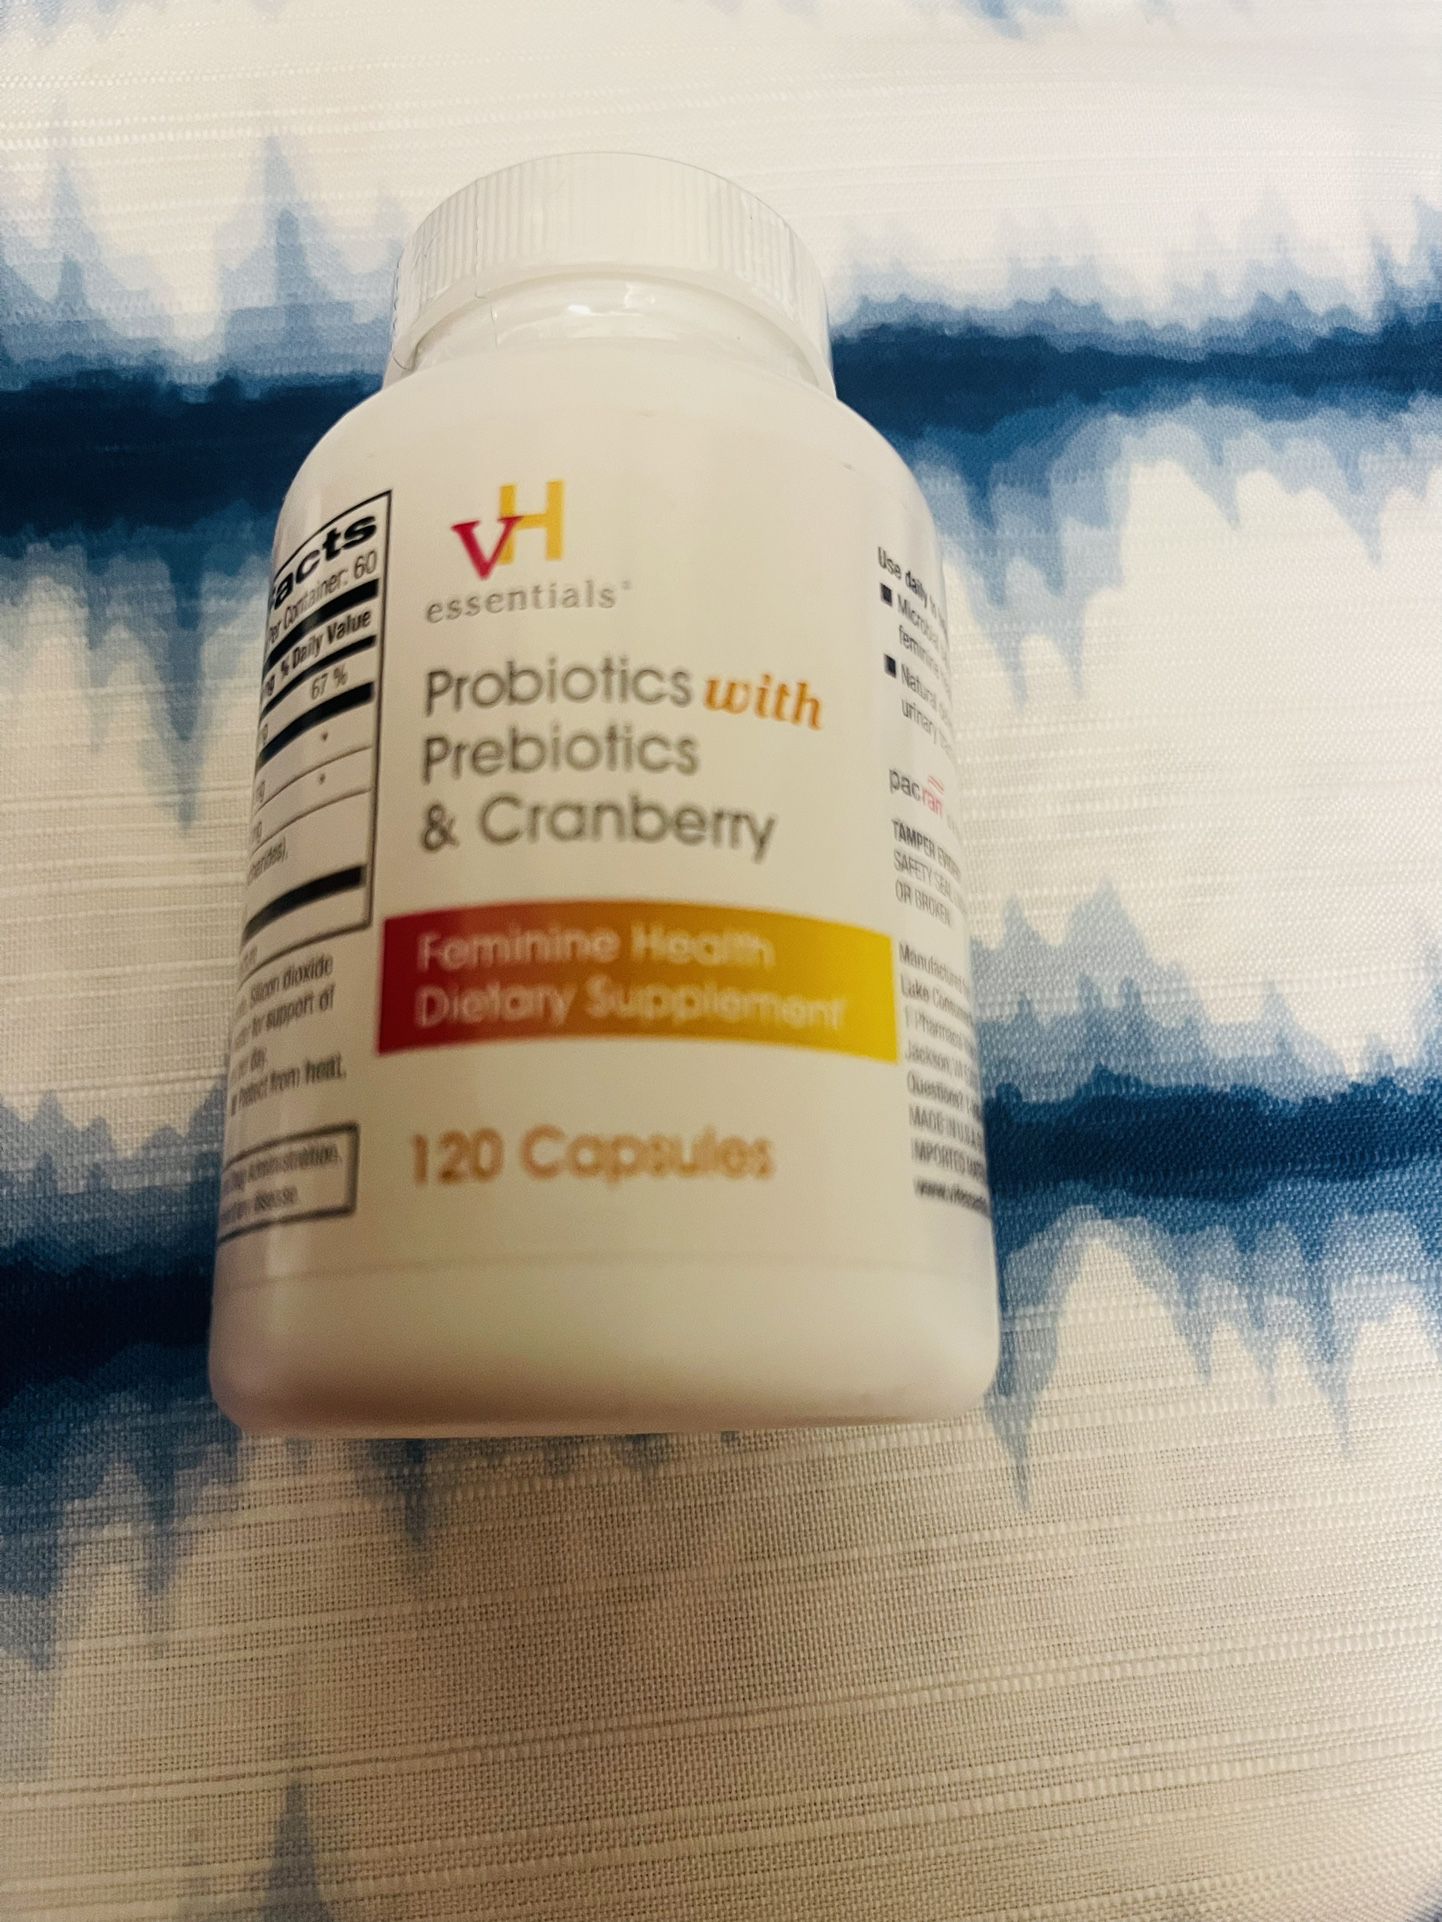 vH essentials Probiotics with Prebiotics and Cranberry Feminine Health Supplement - 120 Capsules (544-36) 